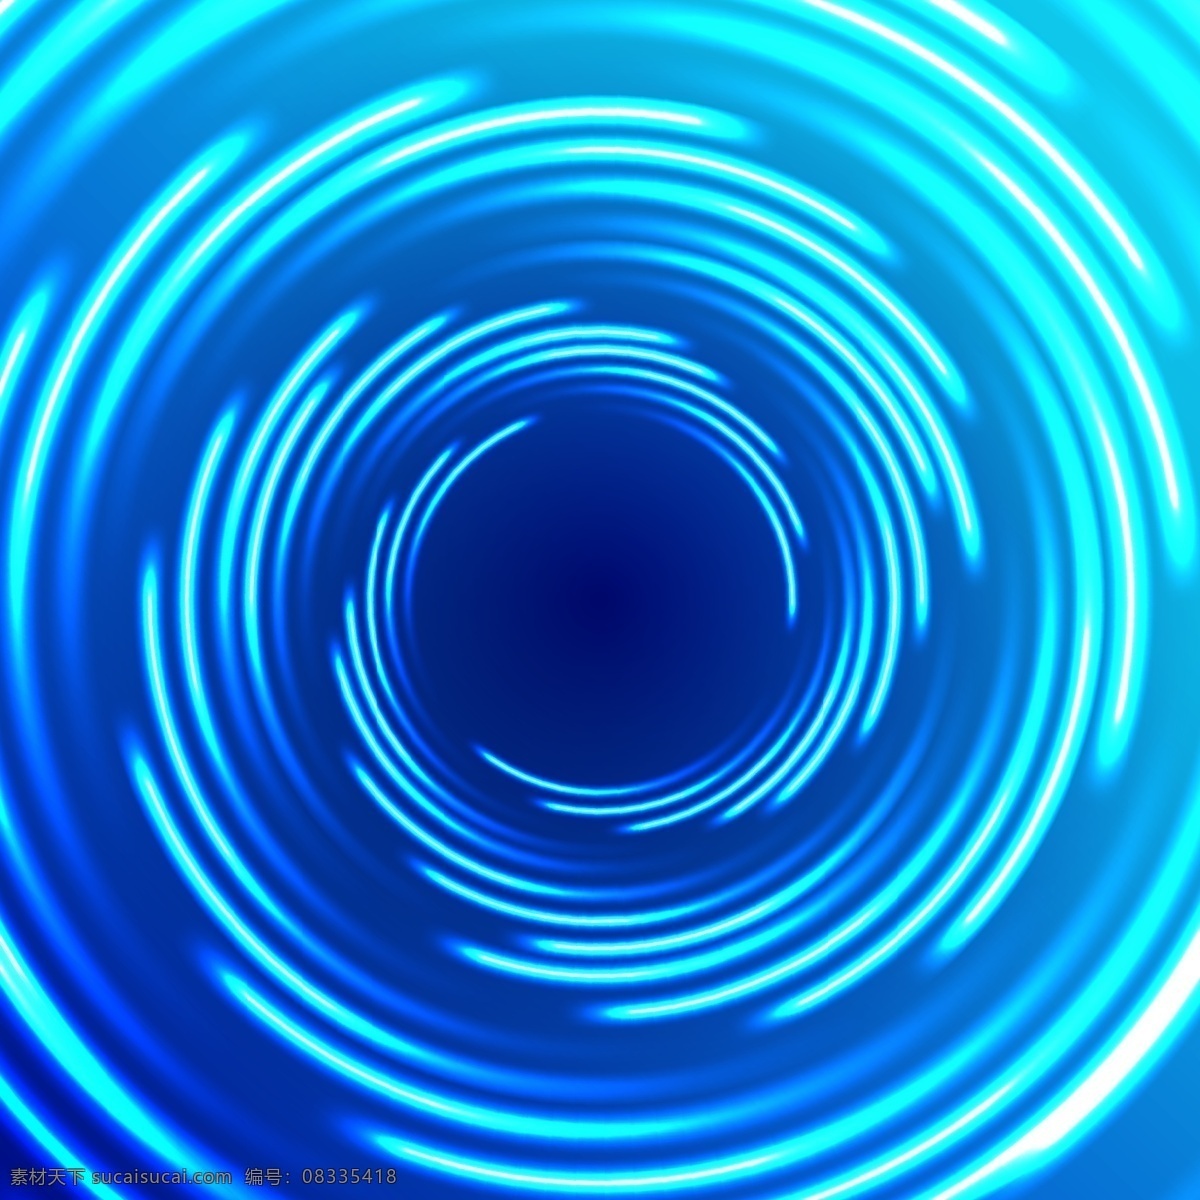 蓝色 抽象 背景 圈子 几何 圆 壁纸 模式 多边形 图案 波光粼粼 闪亮的 辉煌